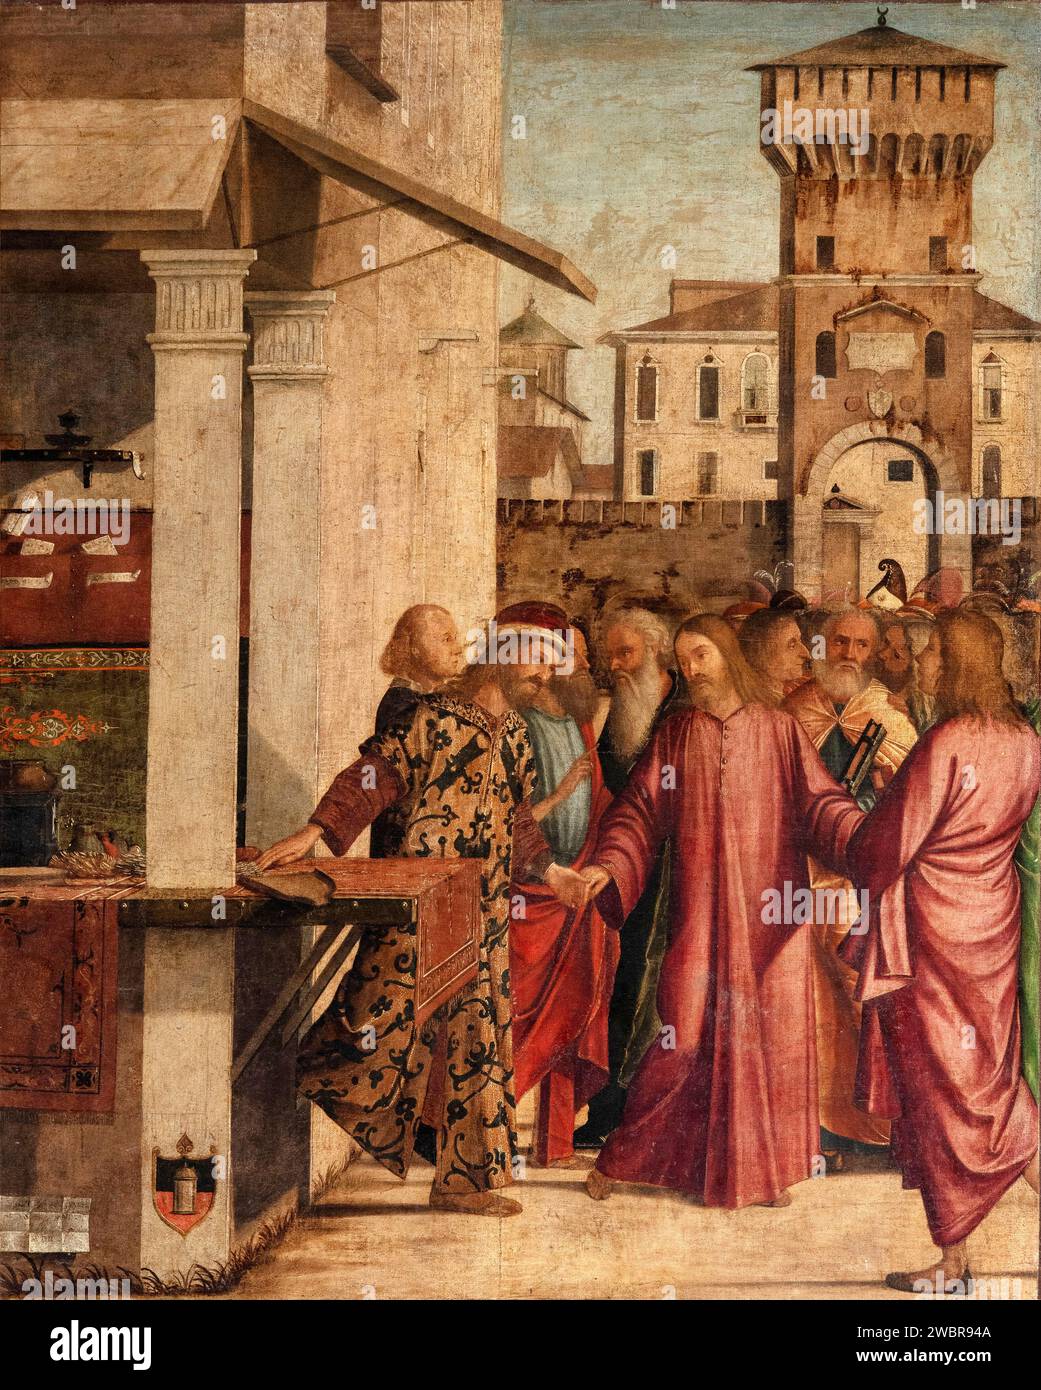 Vocazione di S. Matteo - olio su tela - Vittore Carpaccio - 1502 - Venezia, Scuola Dalmata dei Santi Giorgio e Trifone, detta anche Scuola di S.Gior Stockfoto